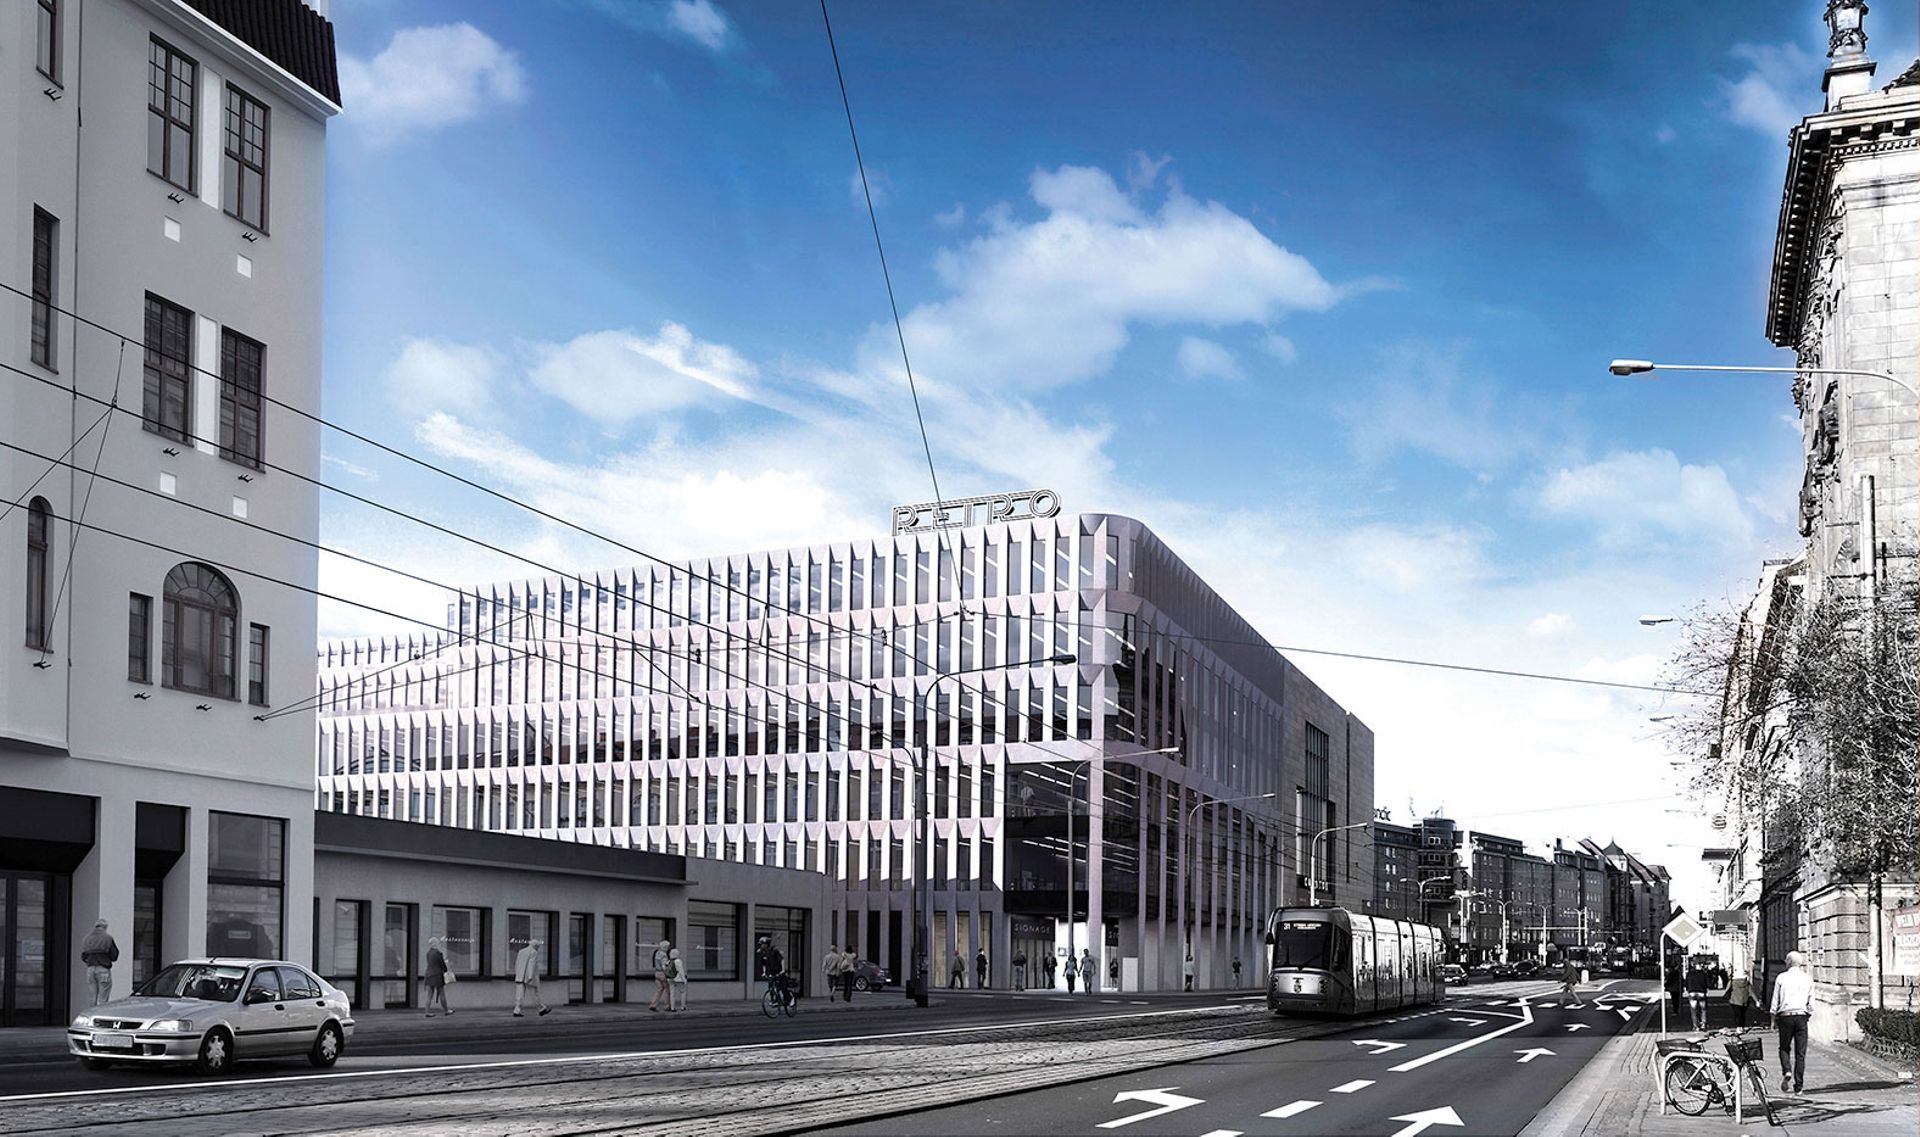 Wrocław: Retro Office House ma nowego zarządcę